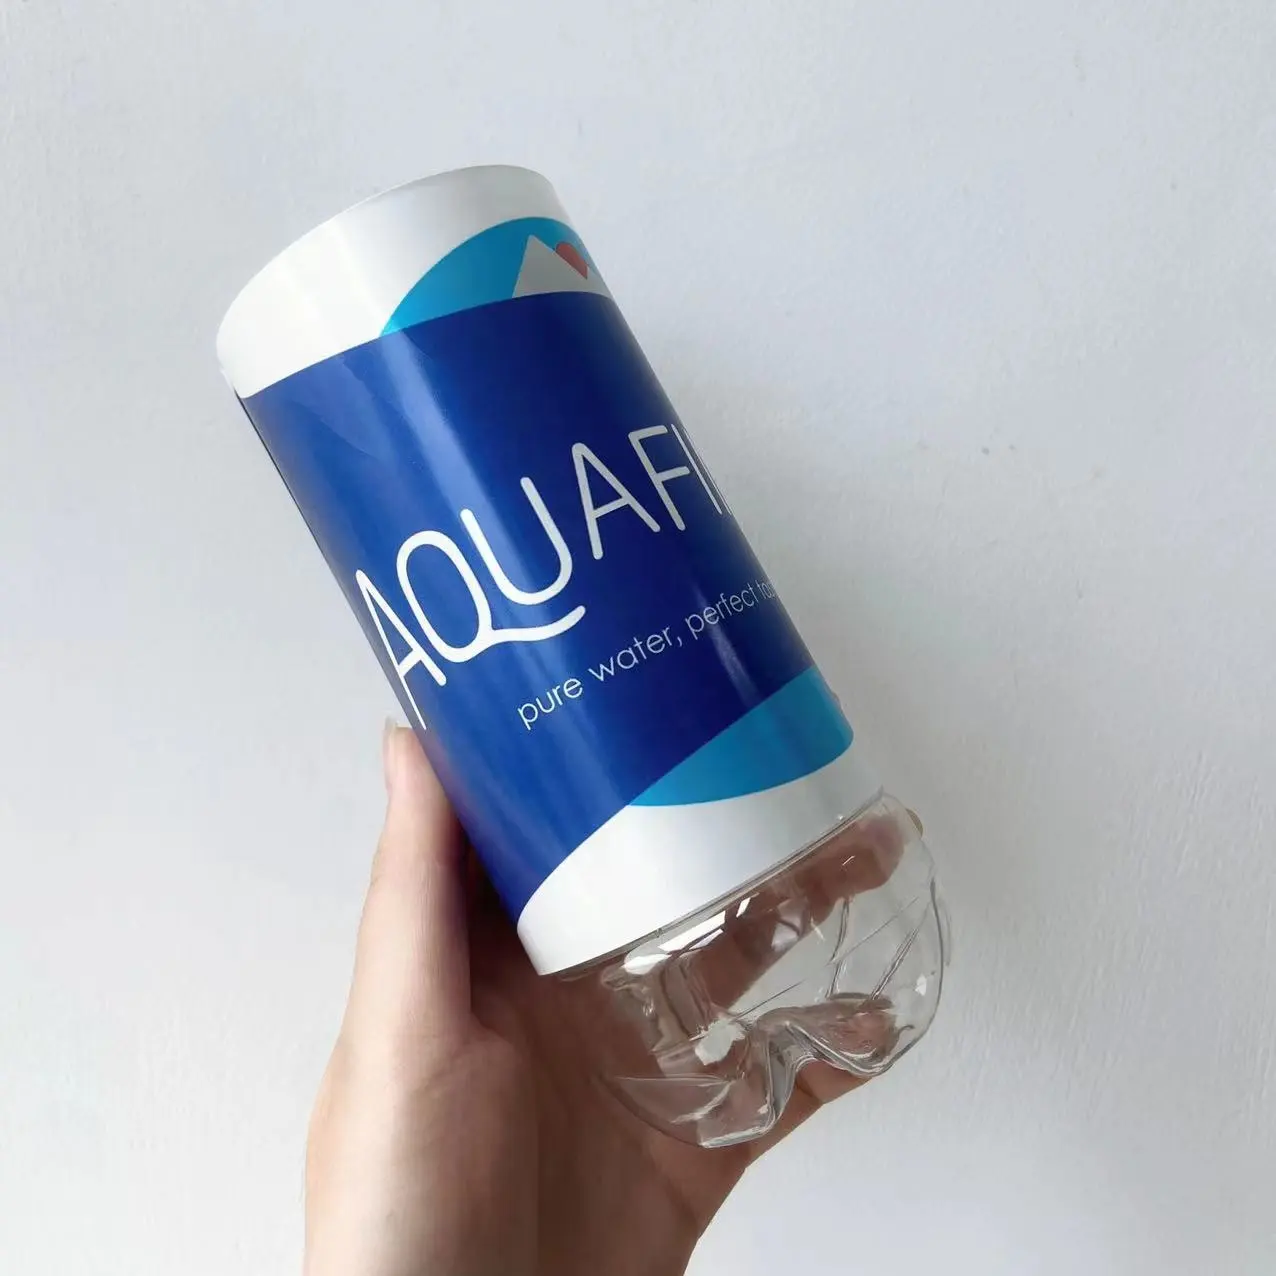 Aquafina Water Bottle Diversion Safe Stash Can Hidden Security